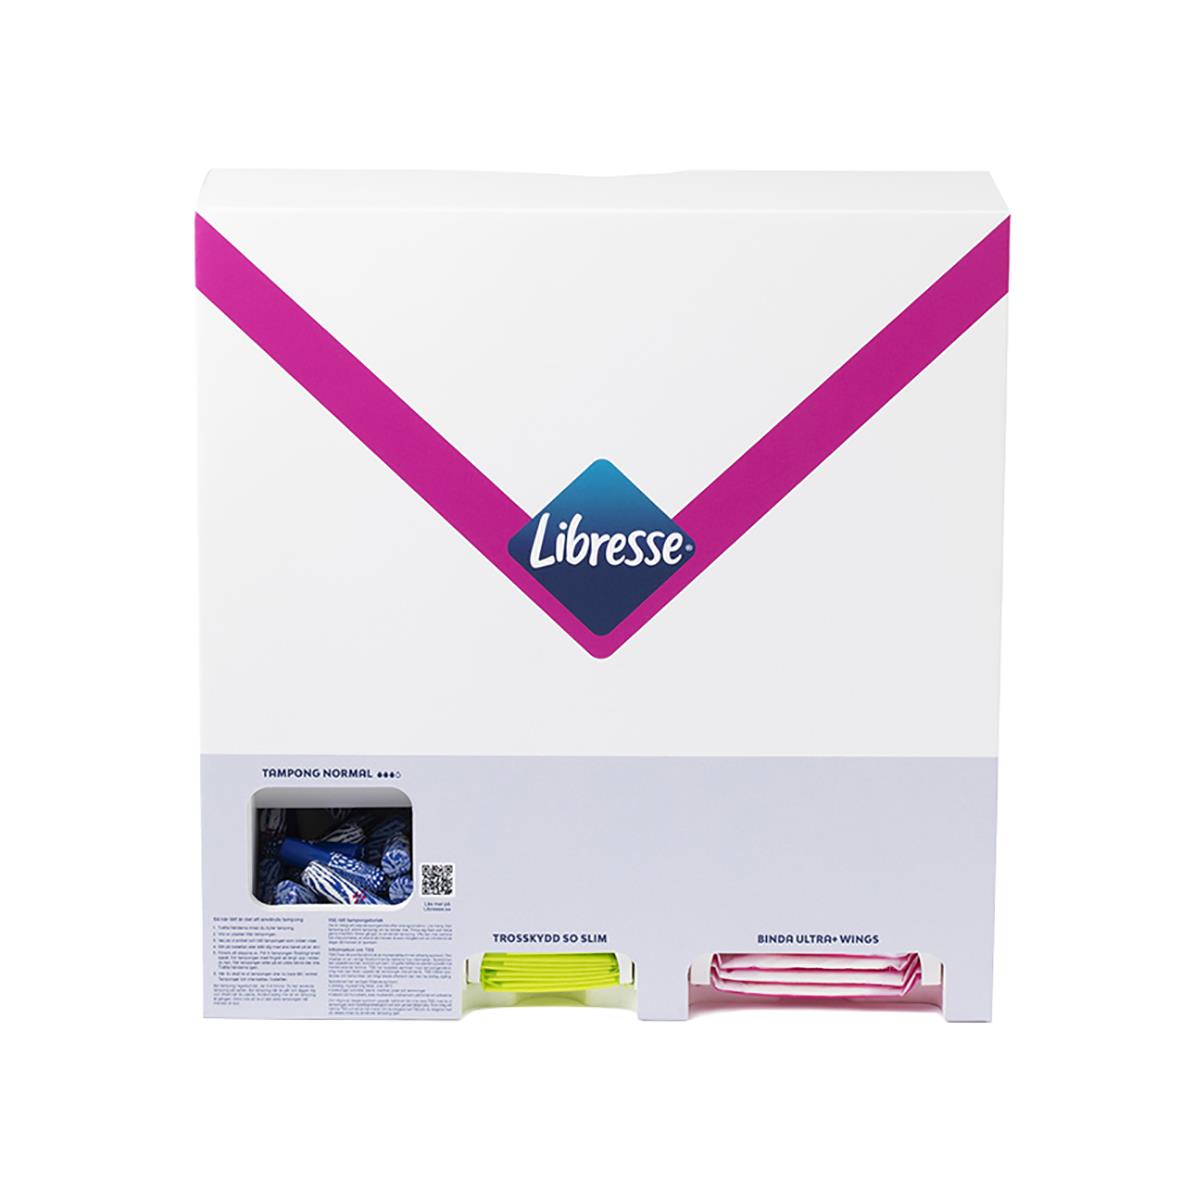 Startpaket Libresse Inkl Dispenser 51020989_2